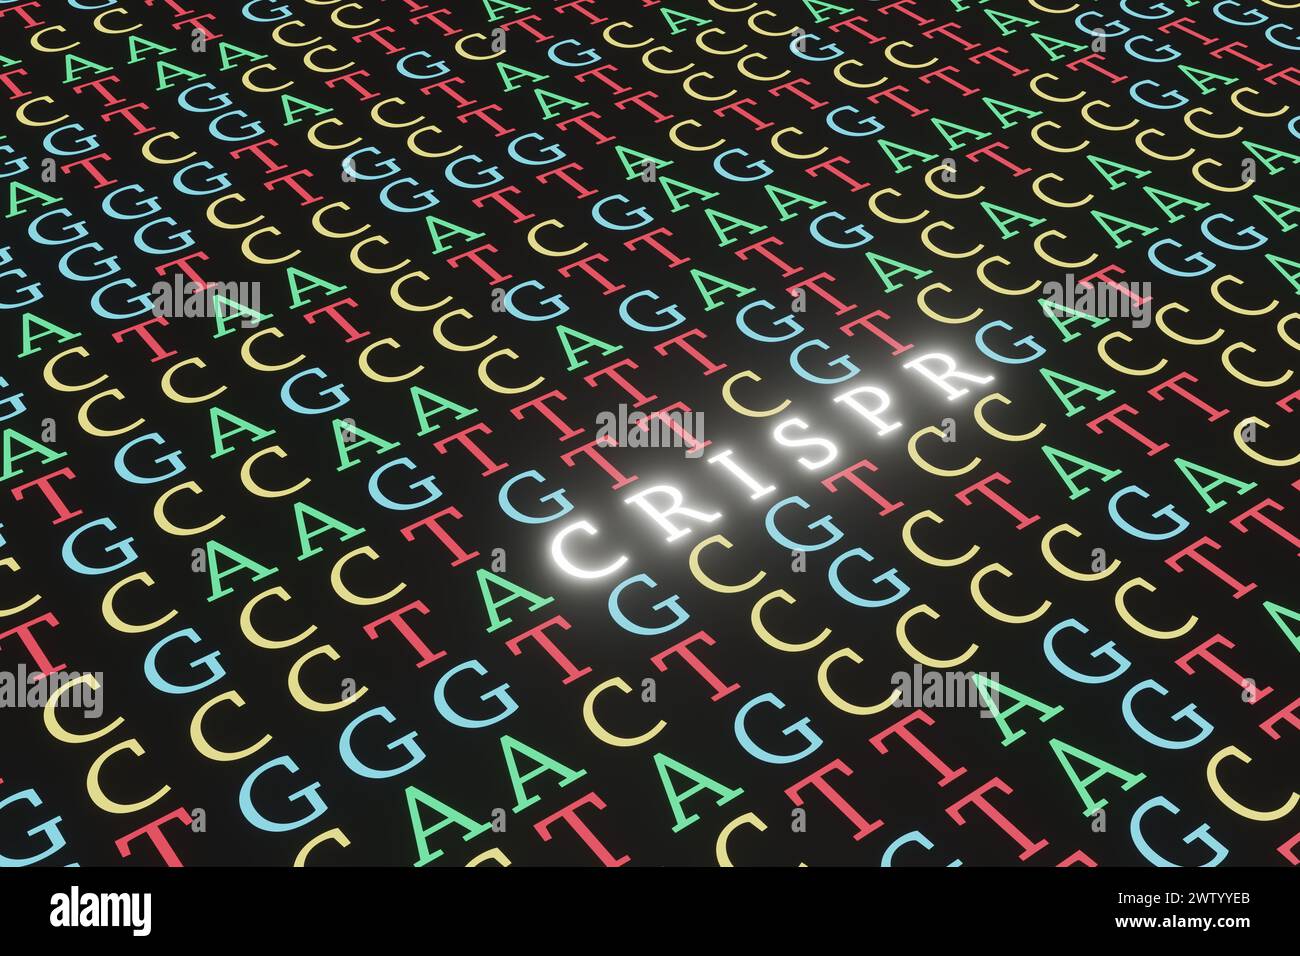 Bunte Buchstaben von ACGT füllten den gesamten schwarzen Bildschirm vollständig aus, wobei der Abschnitt in leuchtend weißes Alphabet CRISPR geändert wurde. Genom-Bearbeitung der DNA-Sequenz Stockfoto